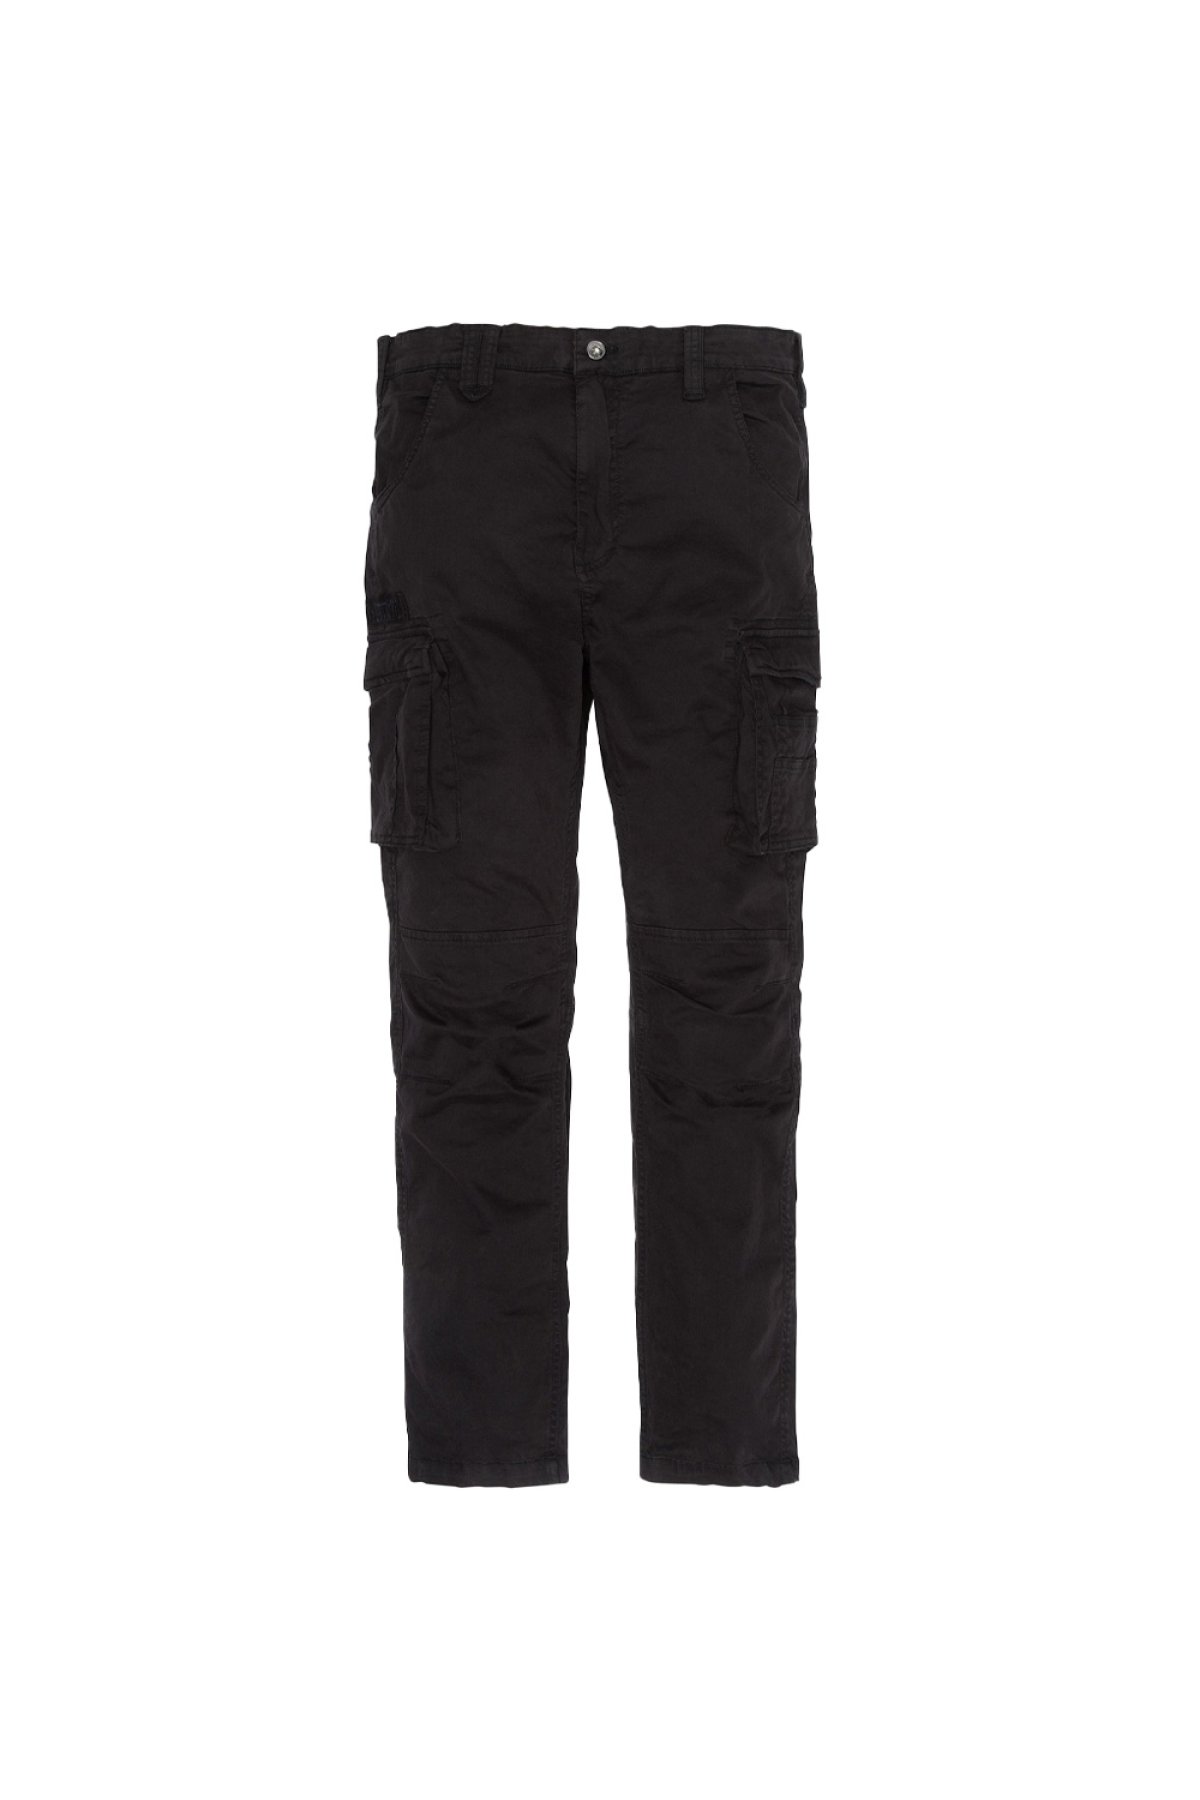 Schott NYC TRTANK70 kalhoty černé